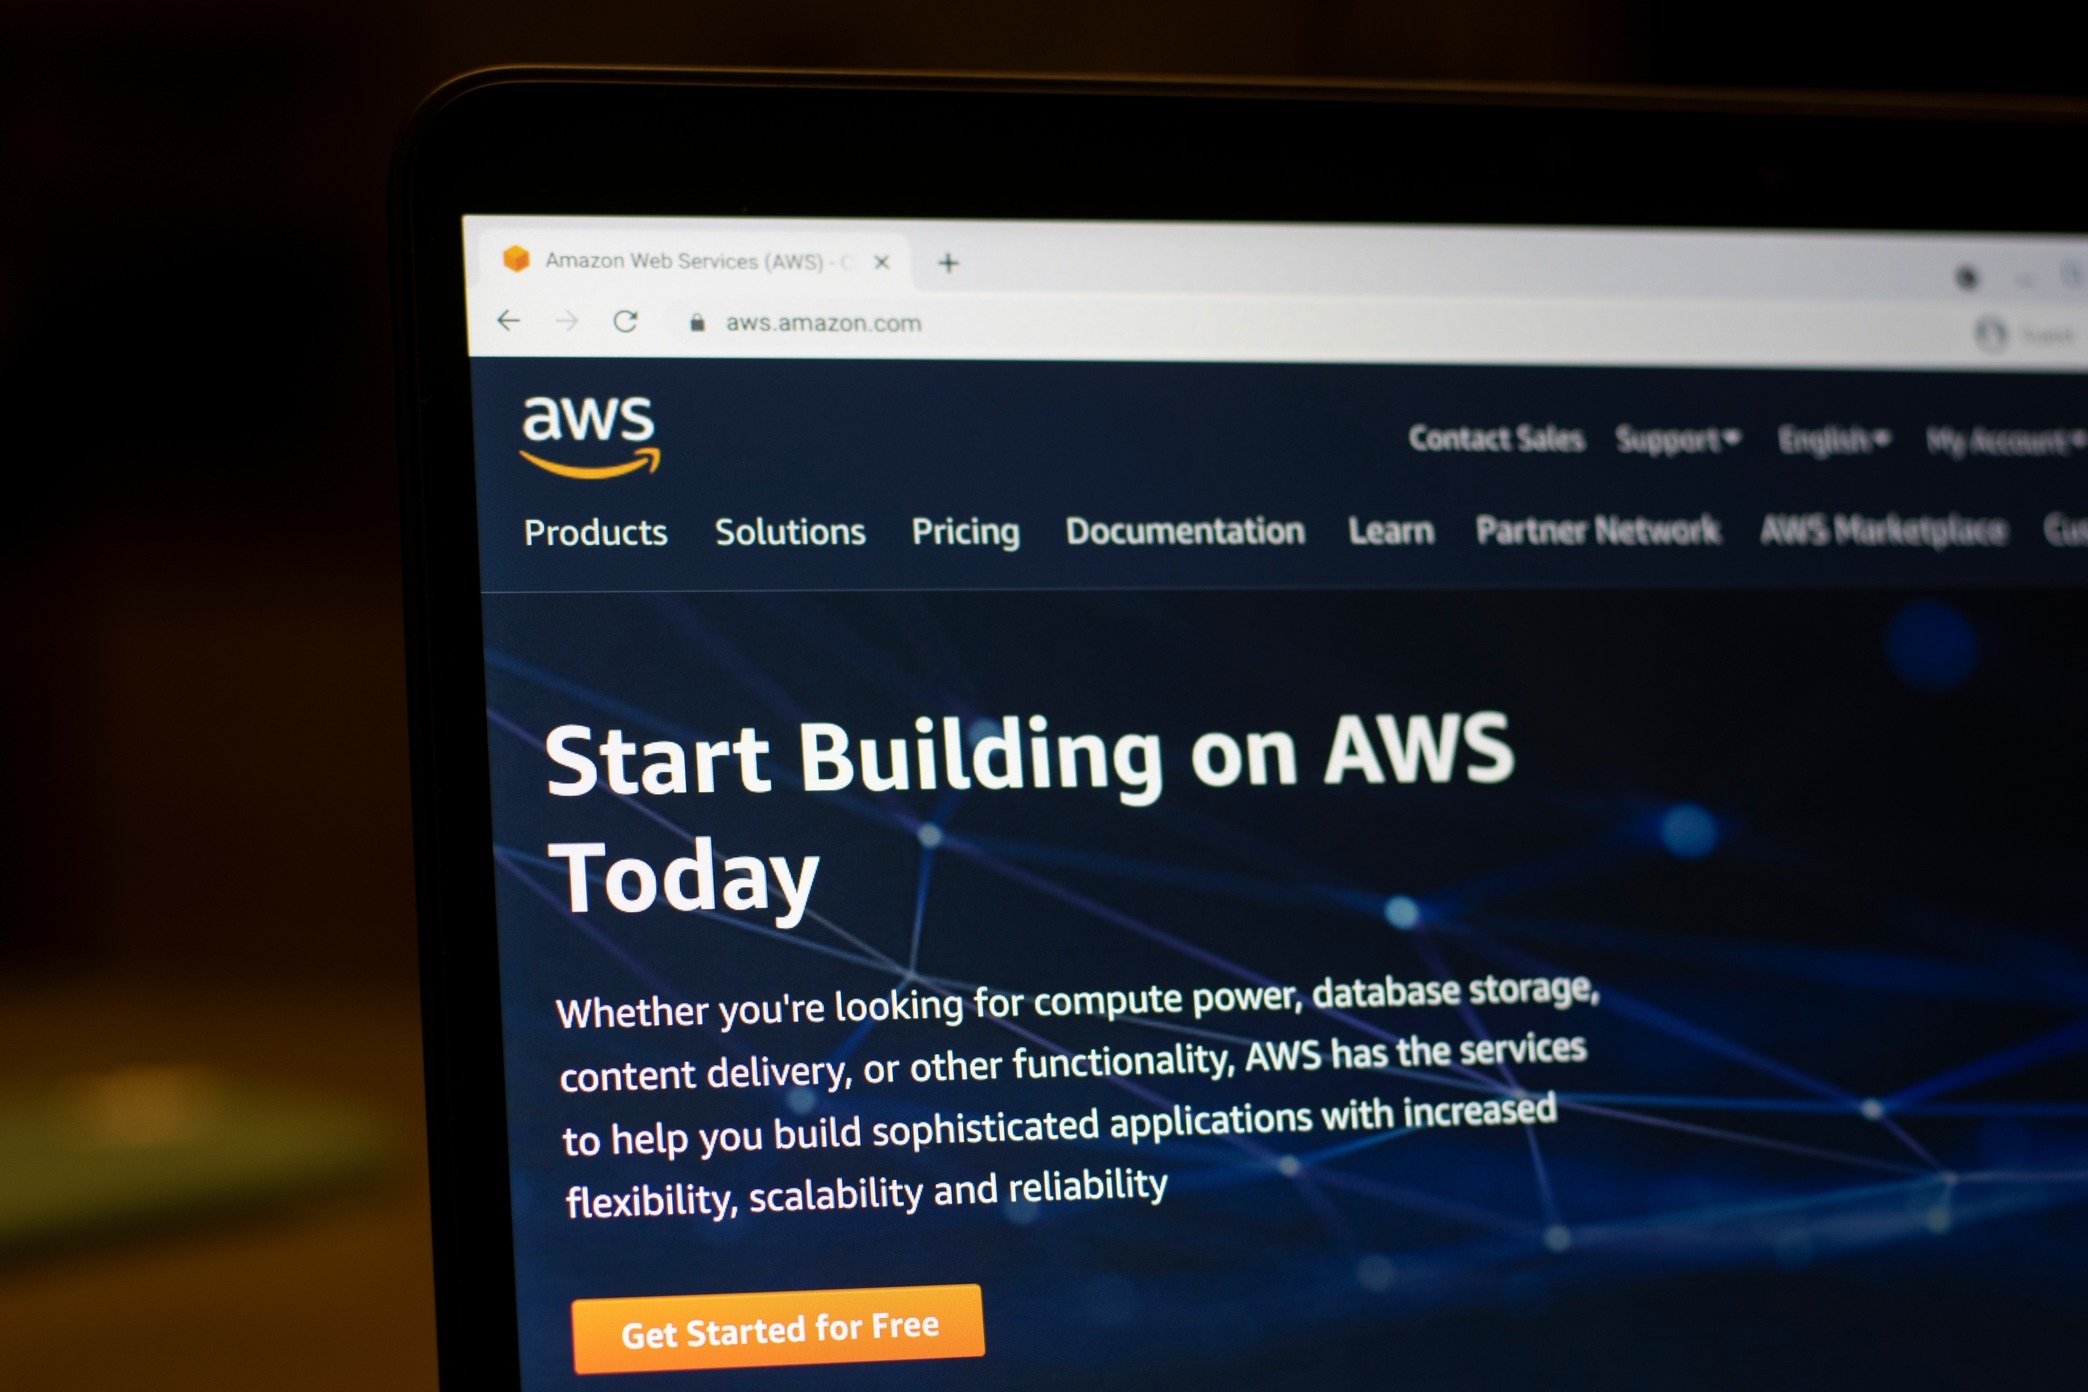 Amazon Web Services for å oppdage nye digitale teknologier